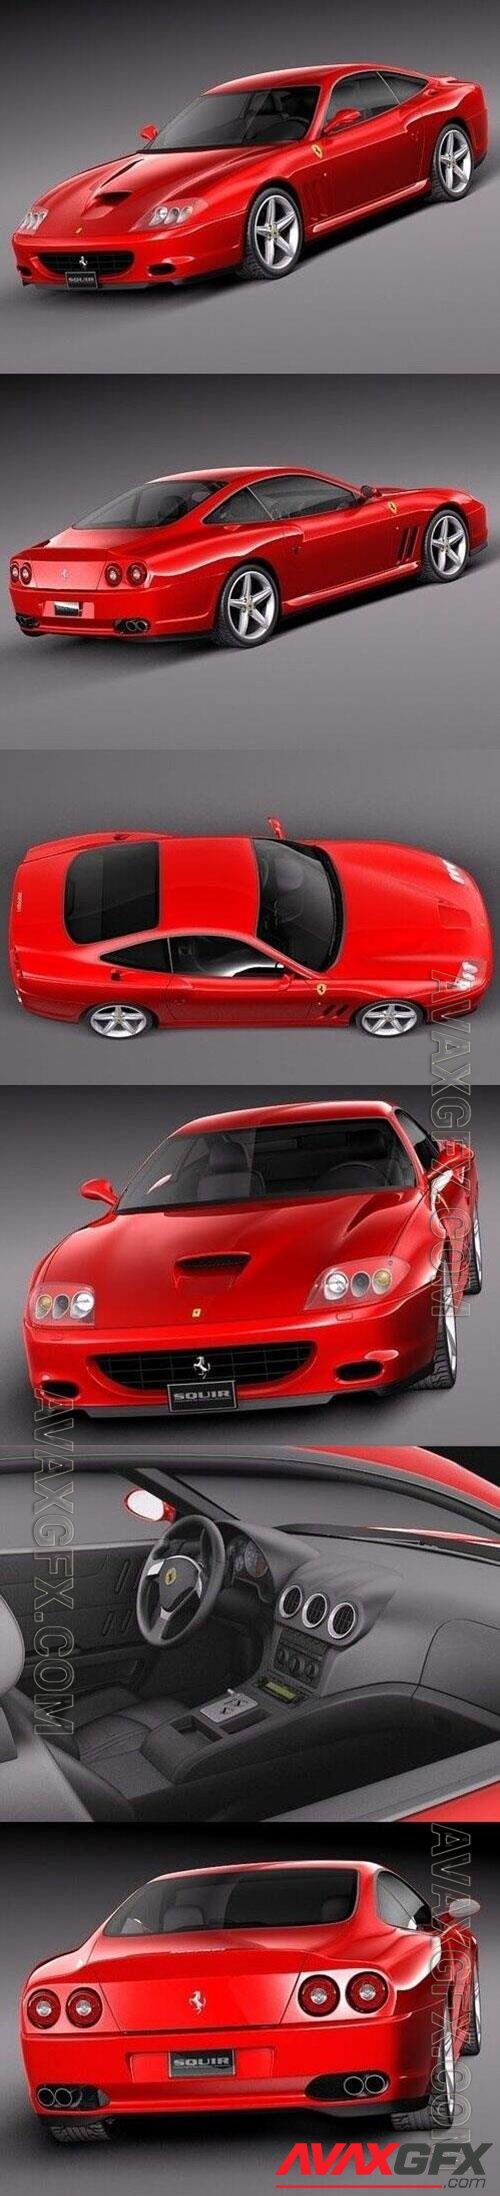 Ferrari 575M Maranello 2002-2006 3D Model